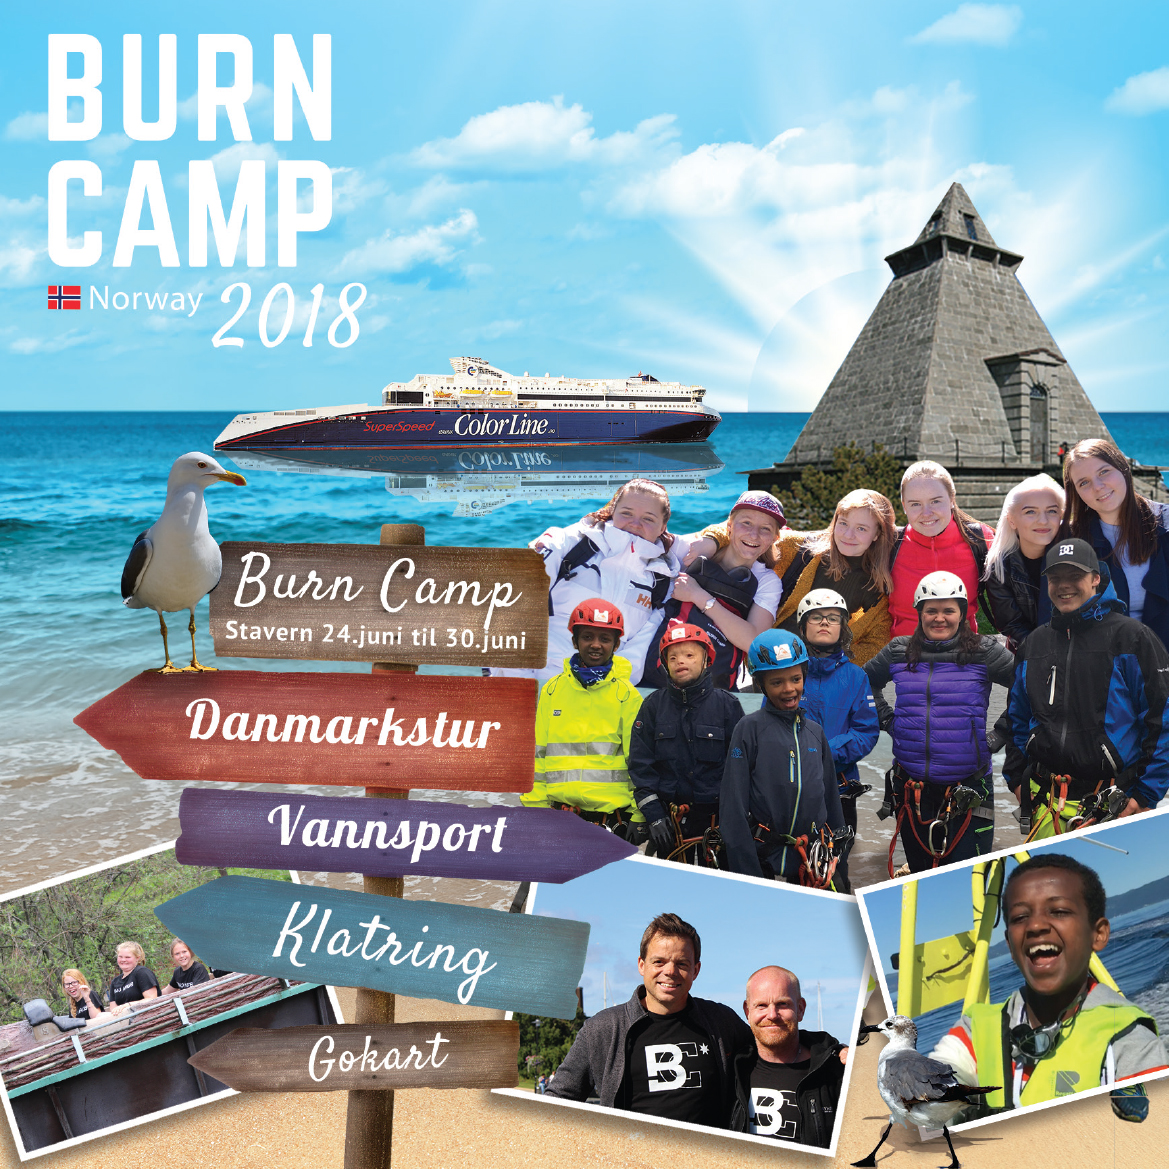 Burn Camp barn og ungdom 2018